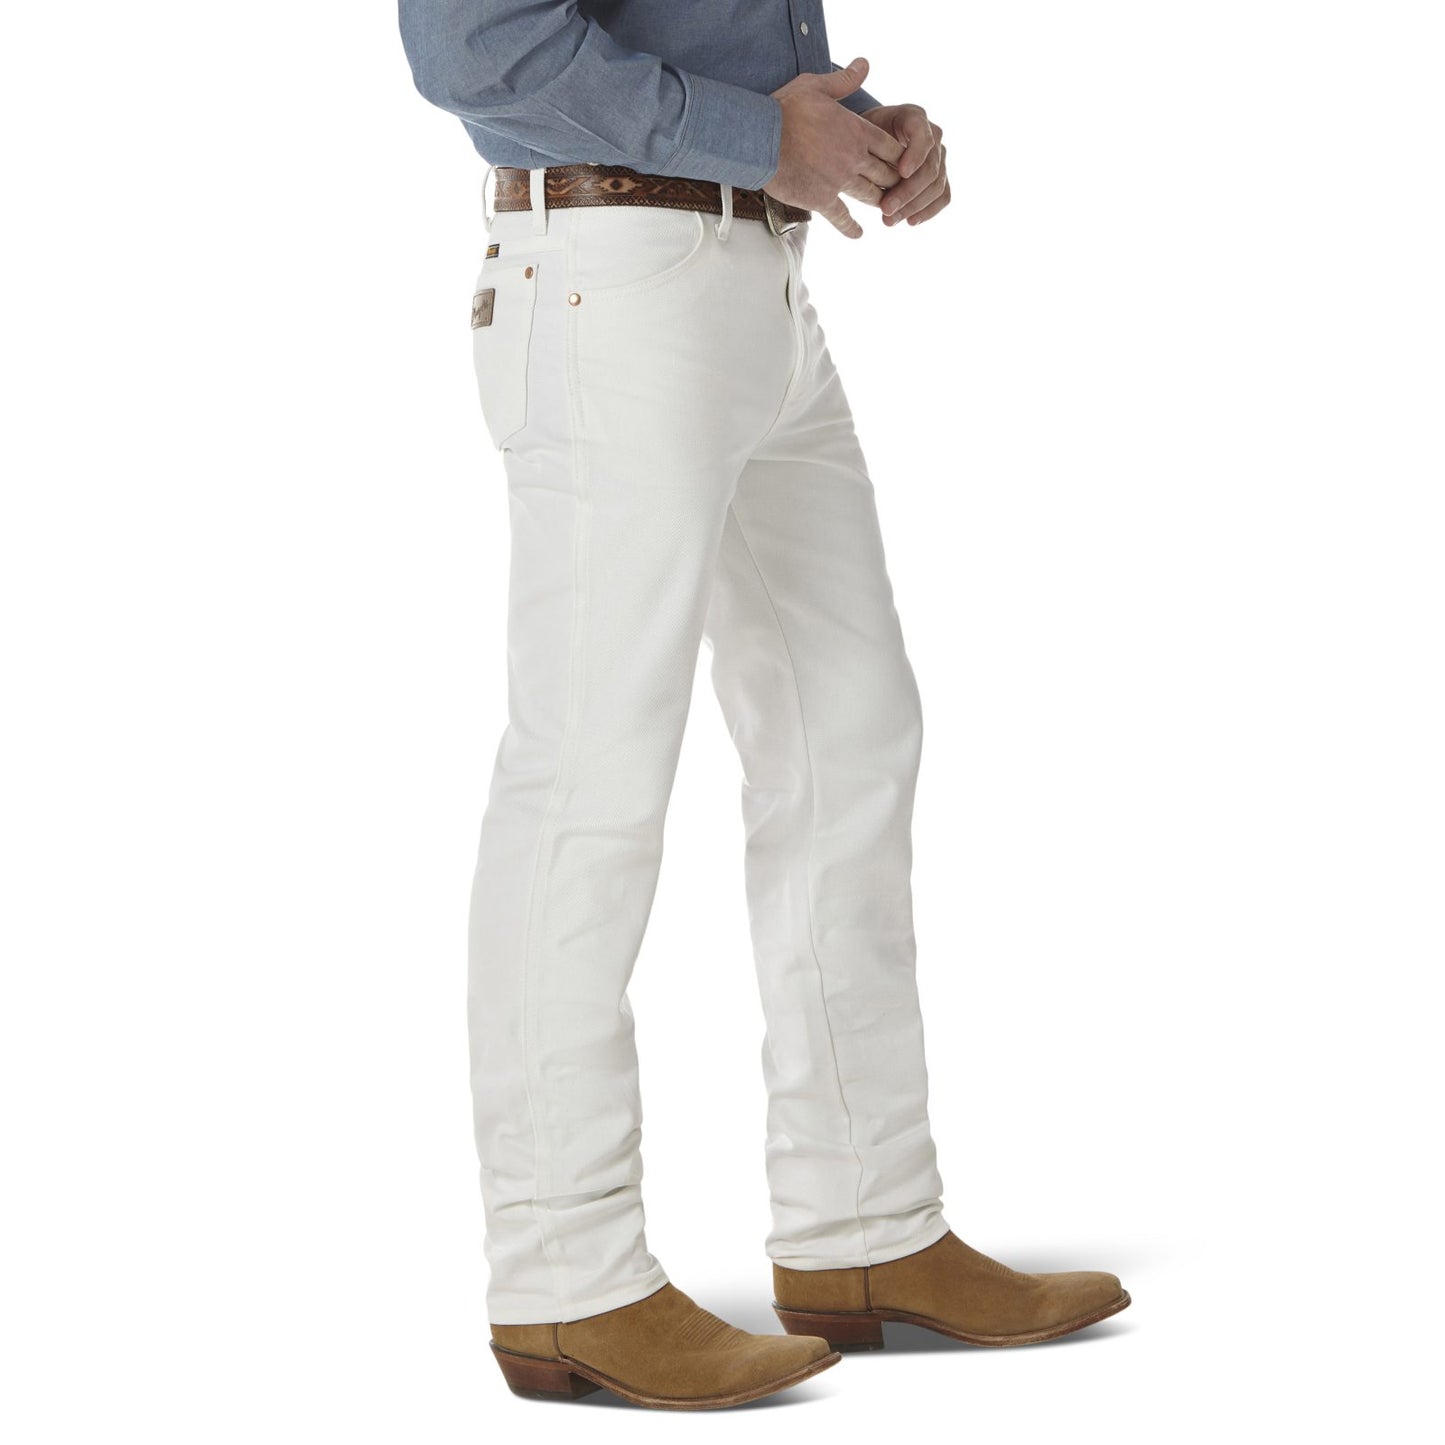 Wrangler Cowboy Cut White Slim Fit Jean